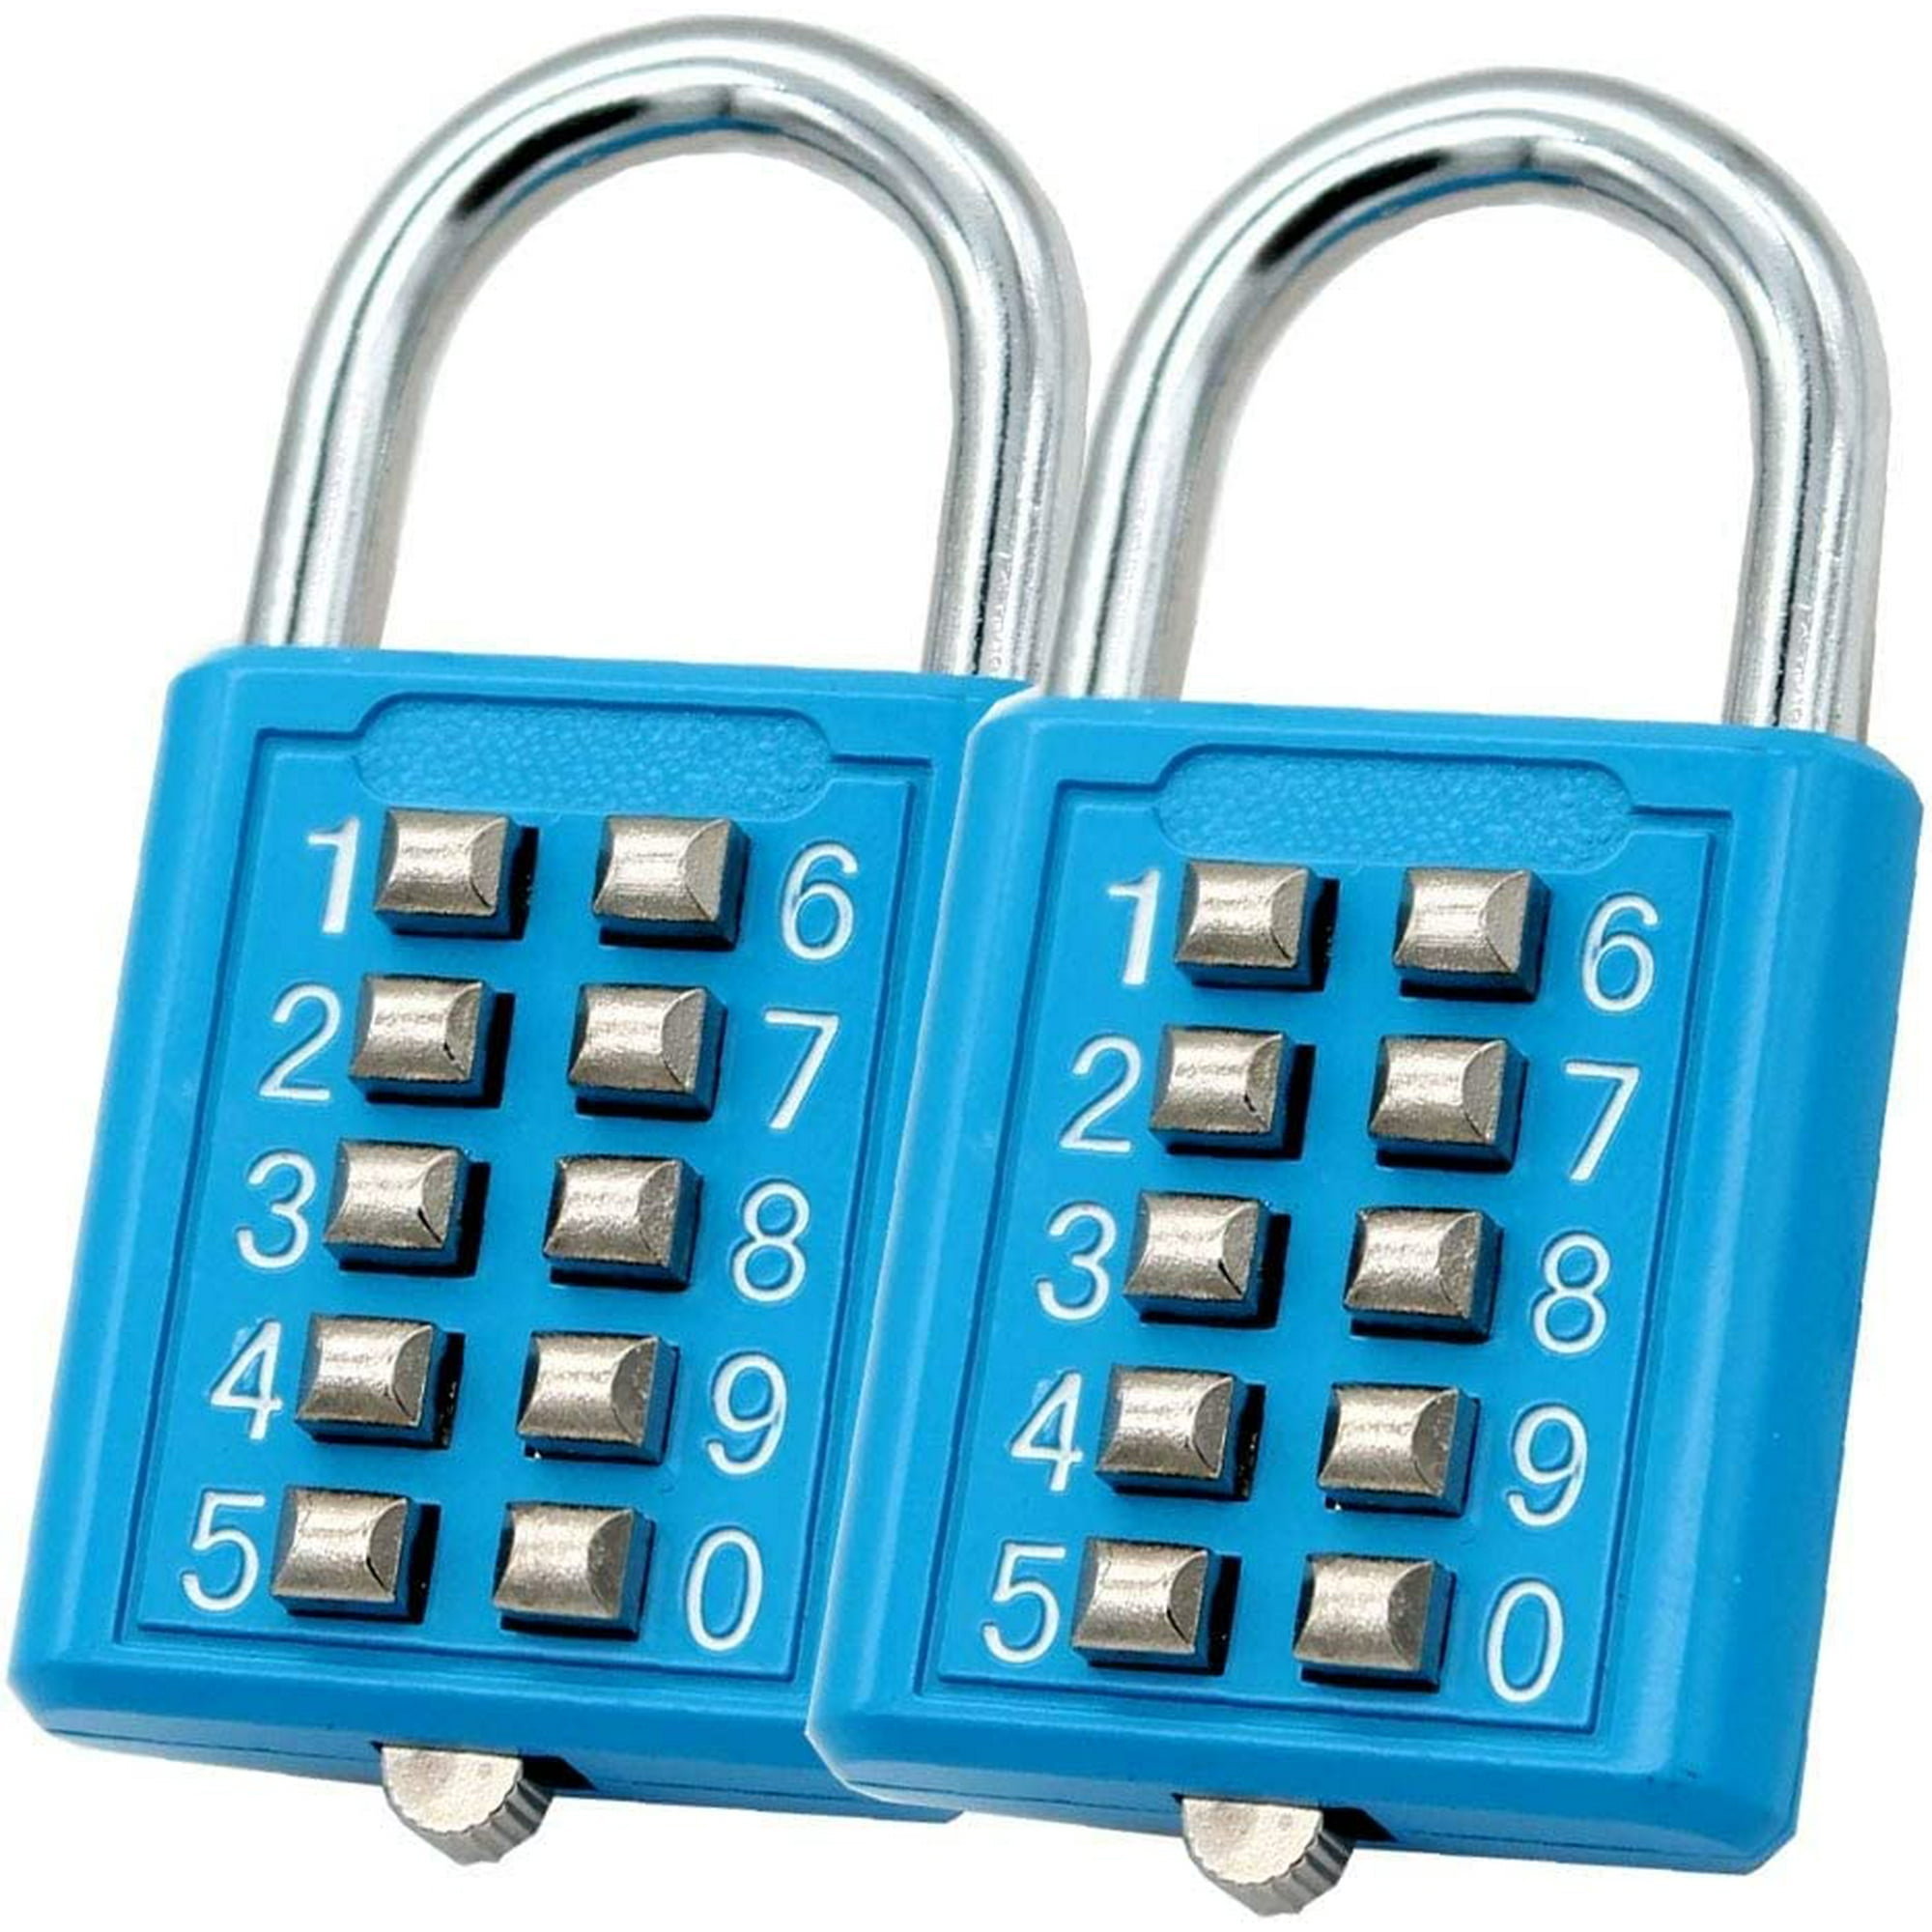 Caja de seguridad para llaves, Combinación de 4 dígitos modificable